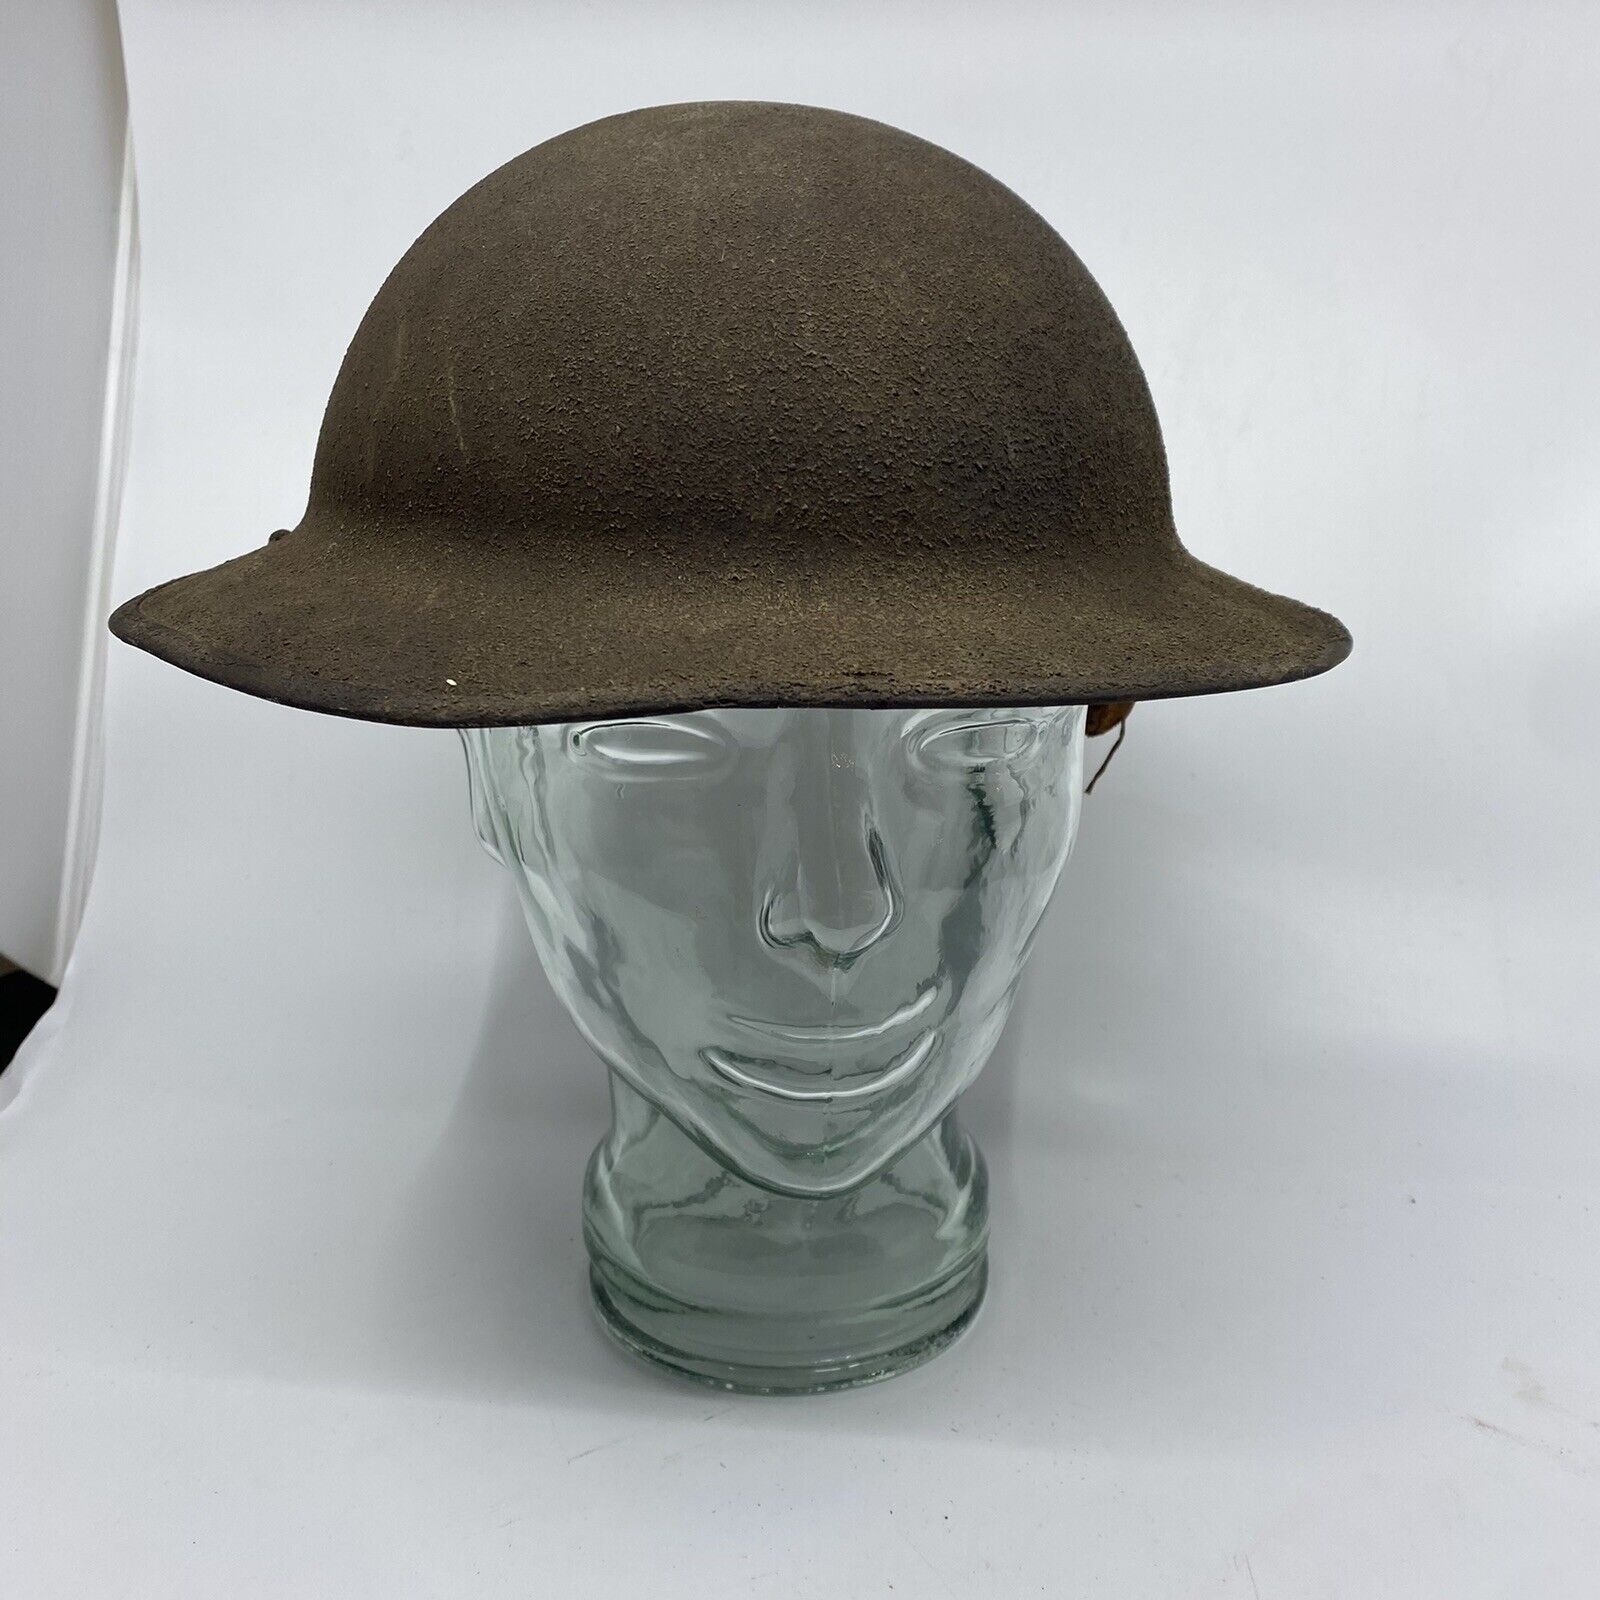 Antique WW1 Brodie Helmet Metal Doughboy - As-Is